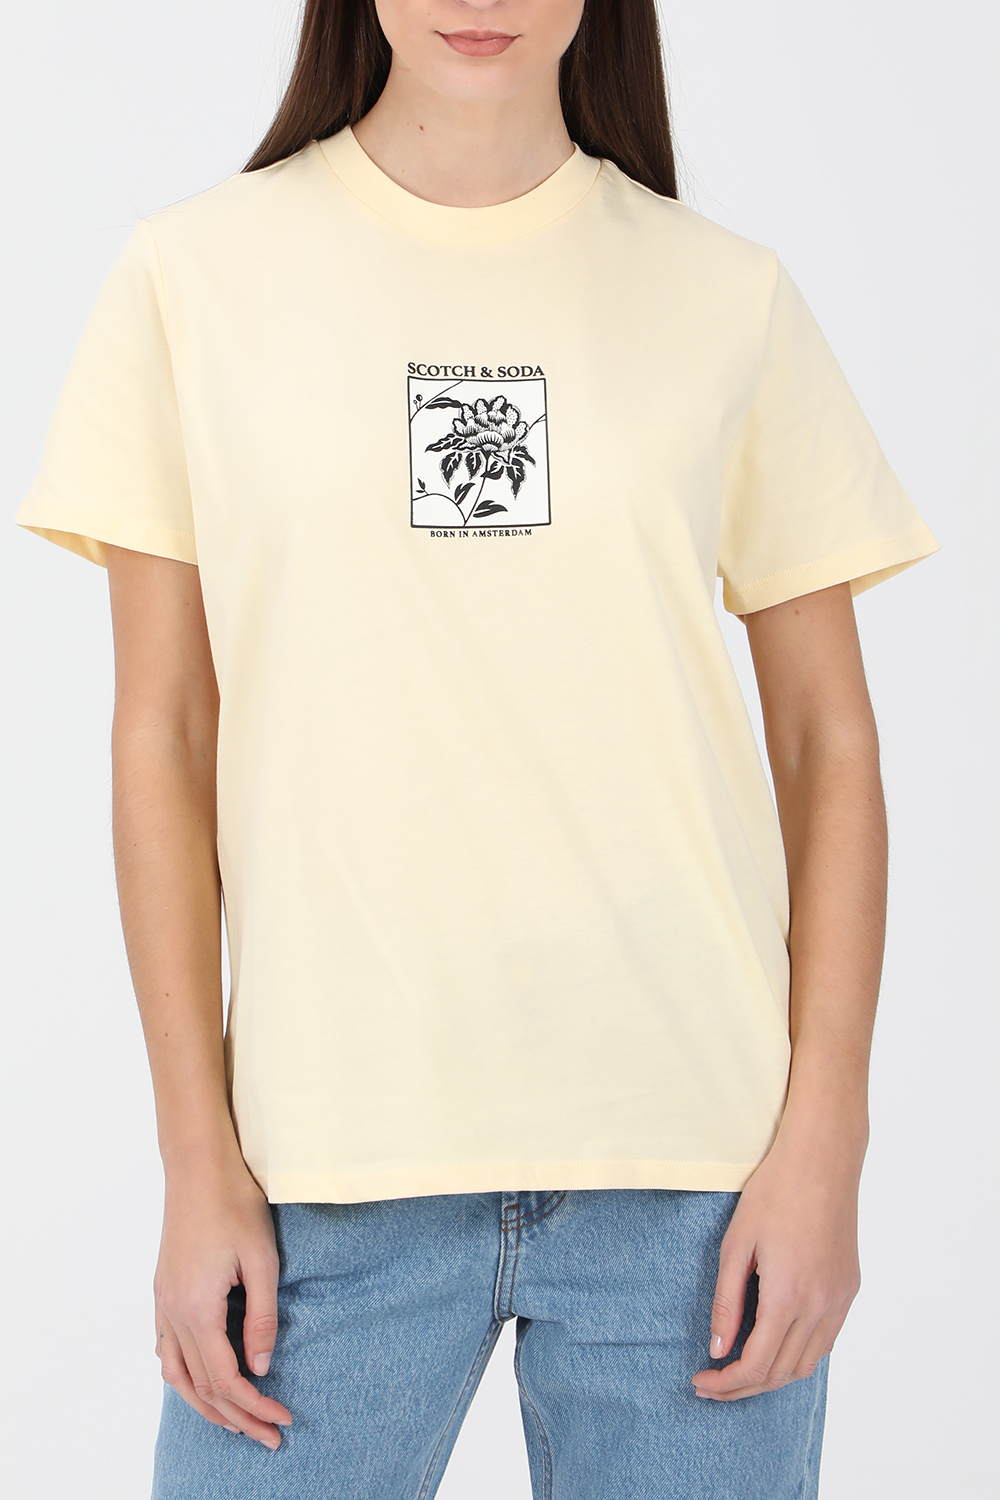 SCOTCH & SODA – Γυναικεία κοντομάνικη μπλούζα SCOTCH & SODA κίτρινη 1821035.0-0053